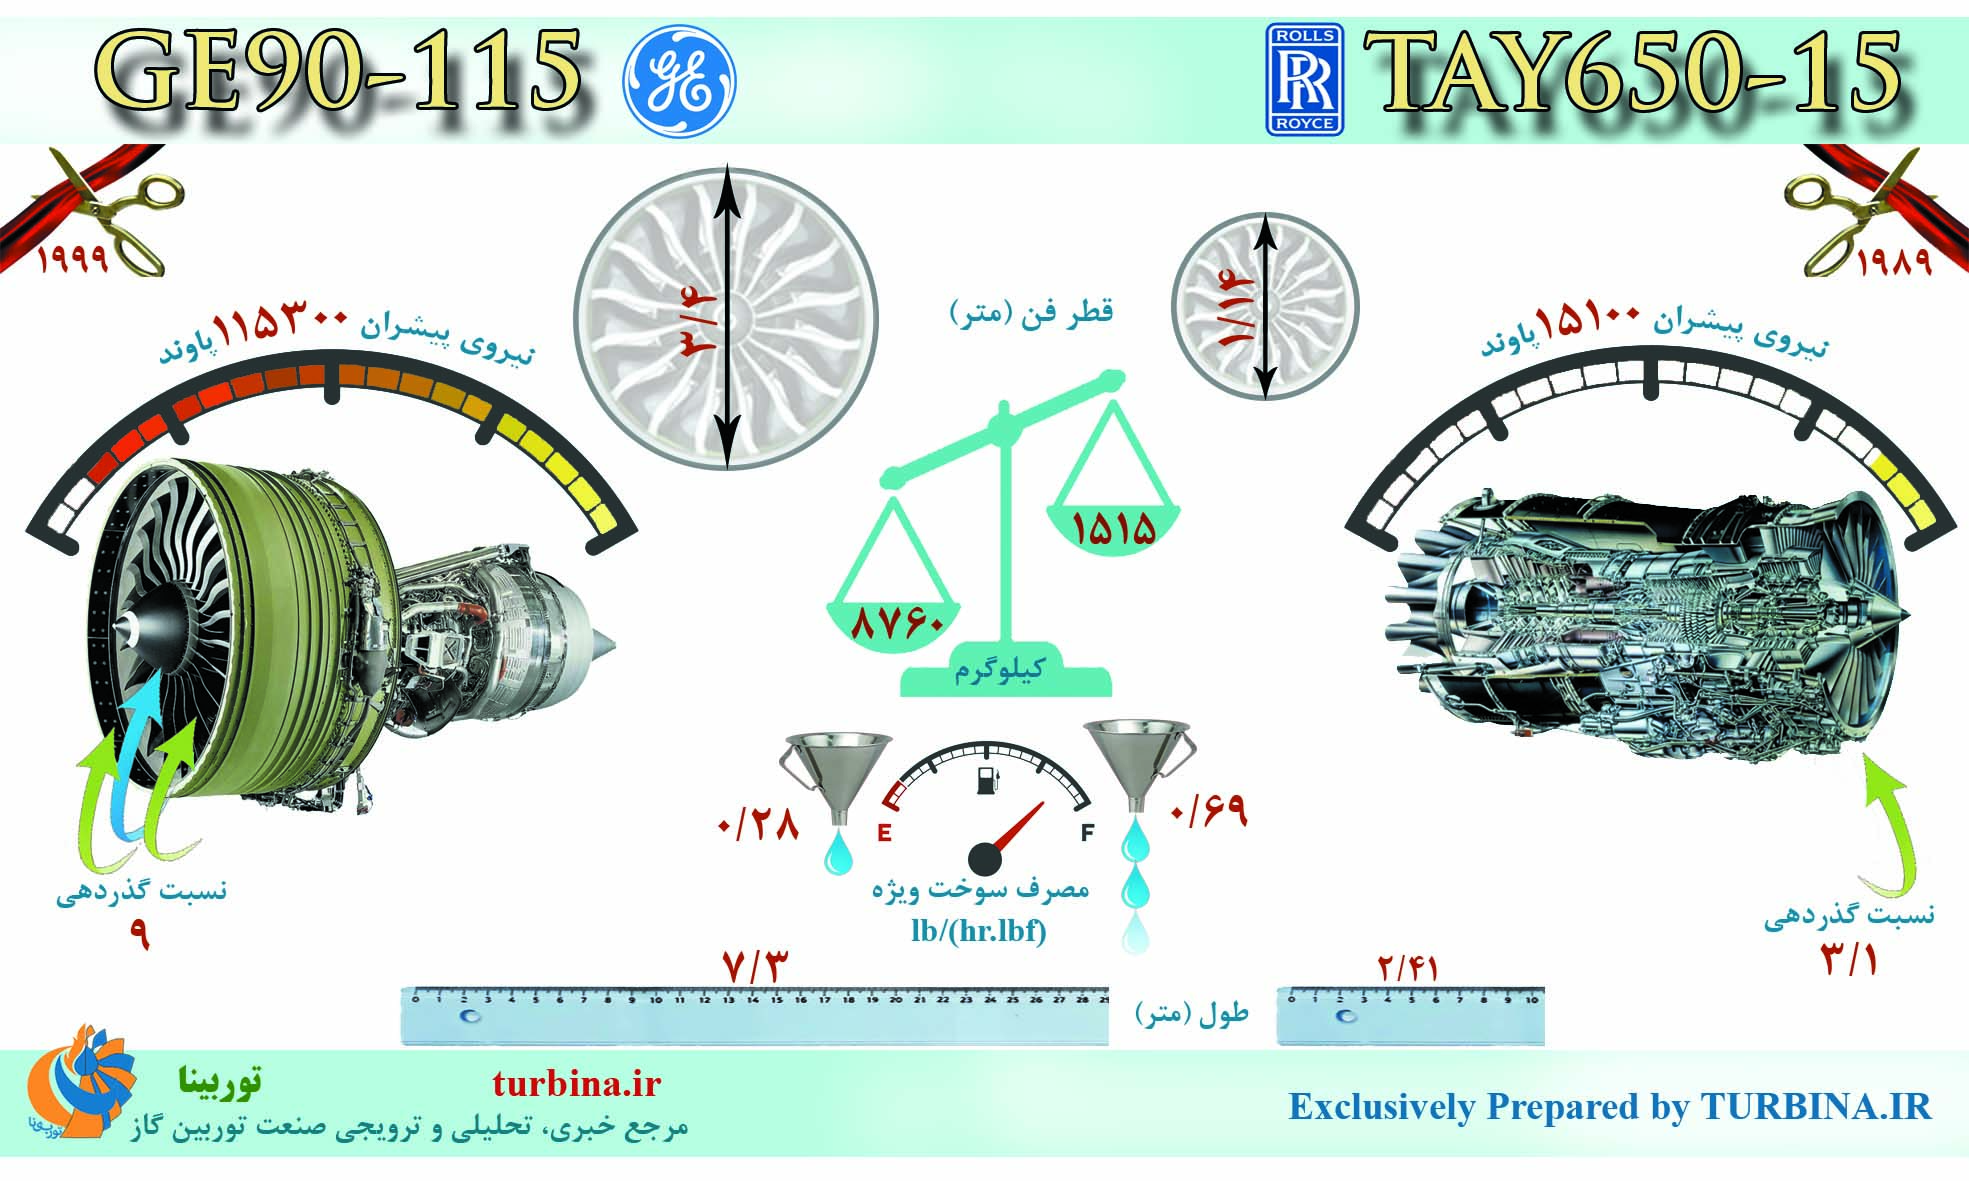 مقایسه موتورهای TAY650-15 و GE90-115